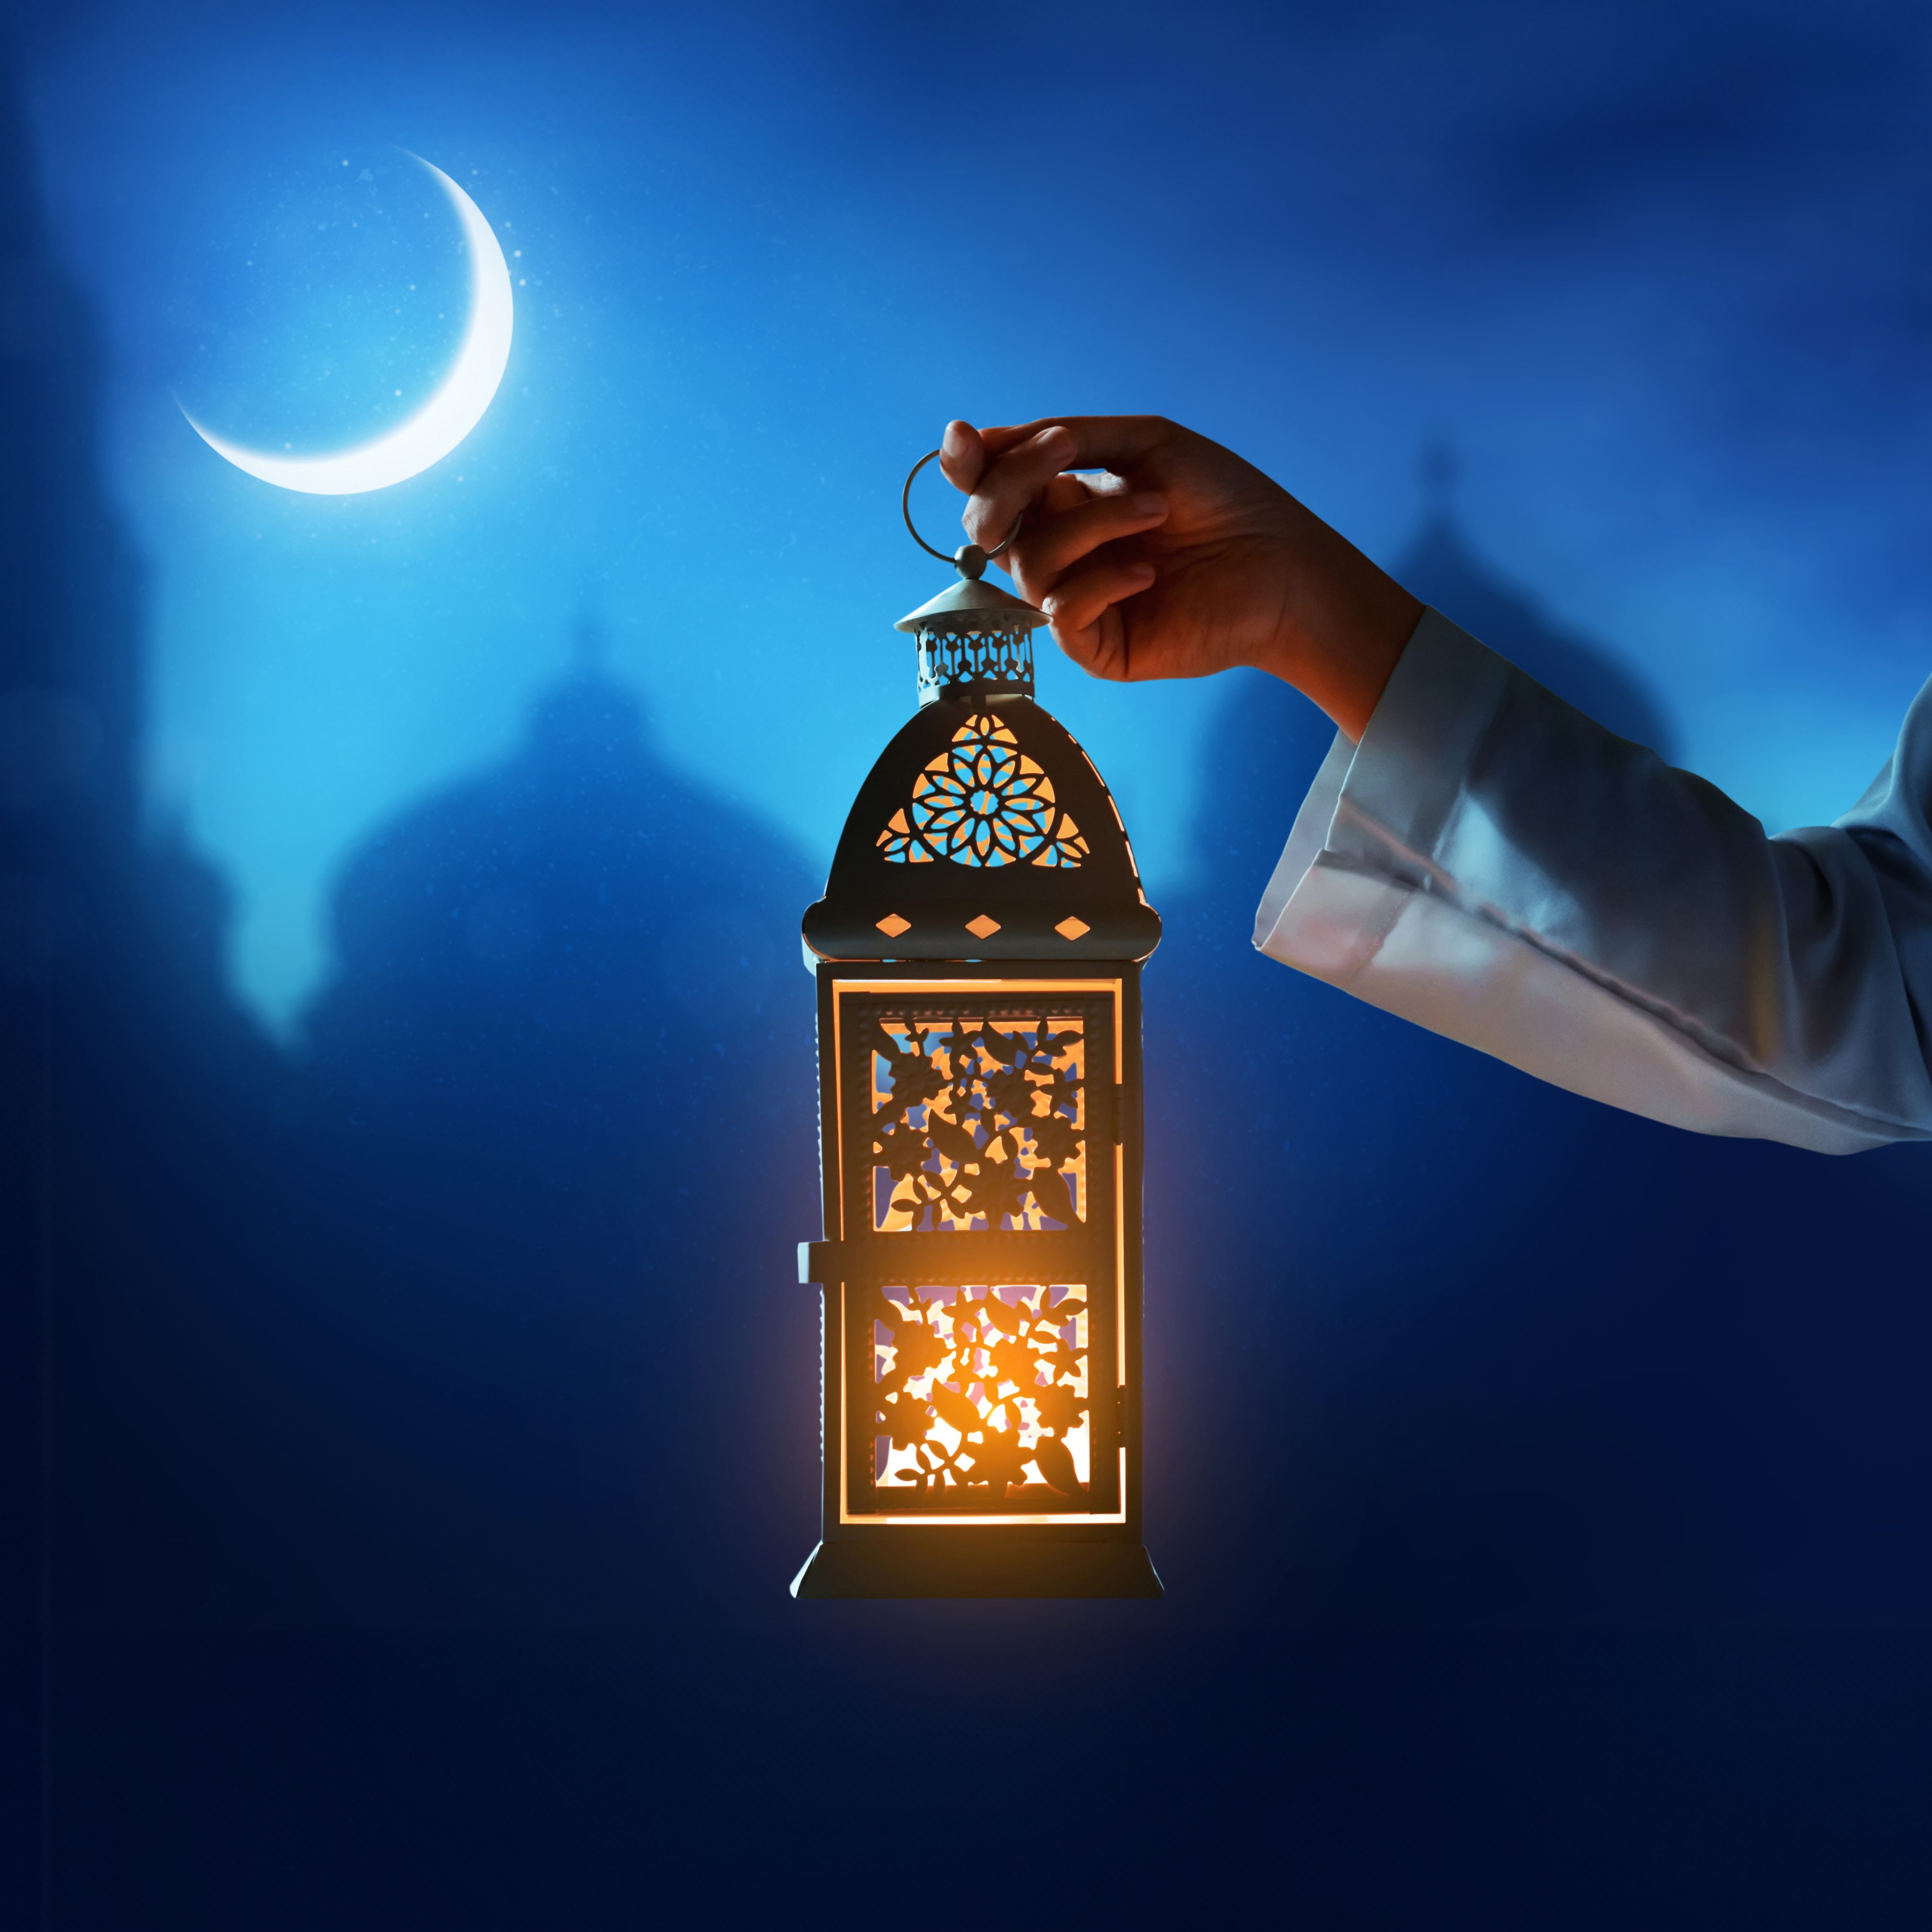 Safe fasting during Ramadan